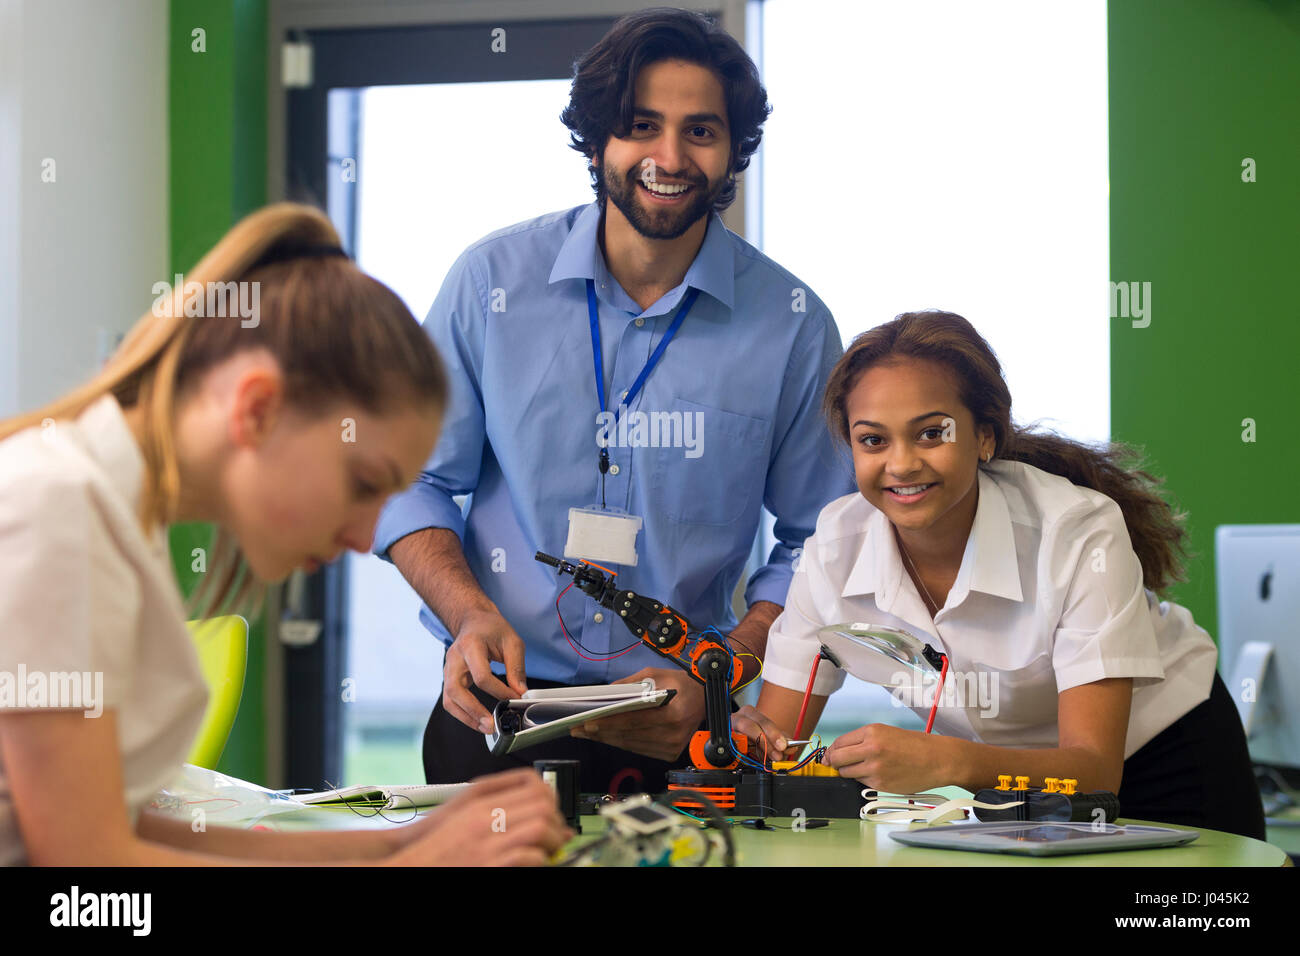 Lehrer und Schüler Lächeln für die Kamera während des Baus eines Roboterarms. Ein anderer Student ist außerhalb des Fokus im Vordergrund. Stockfoto